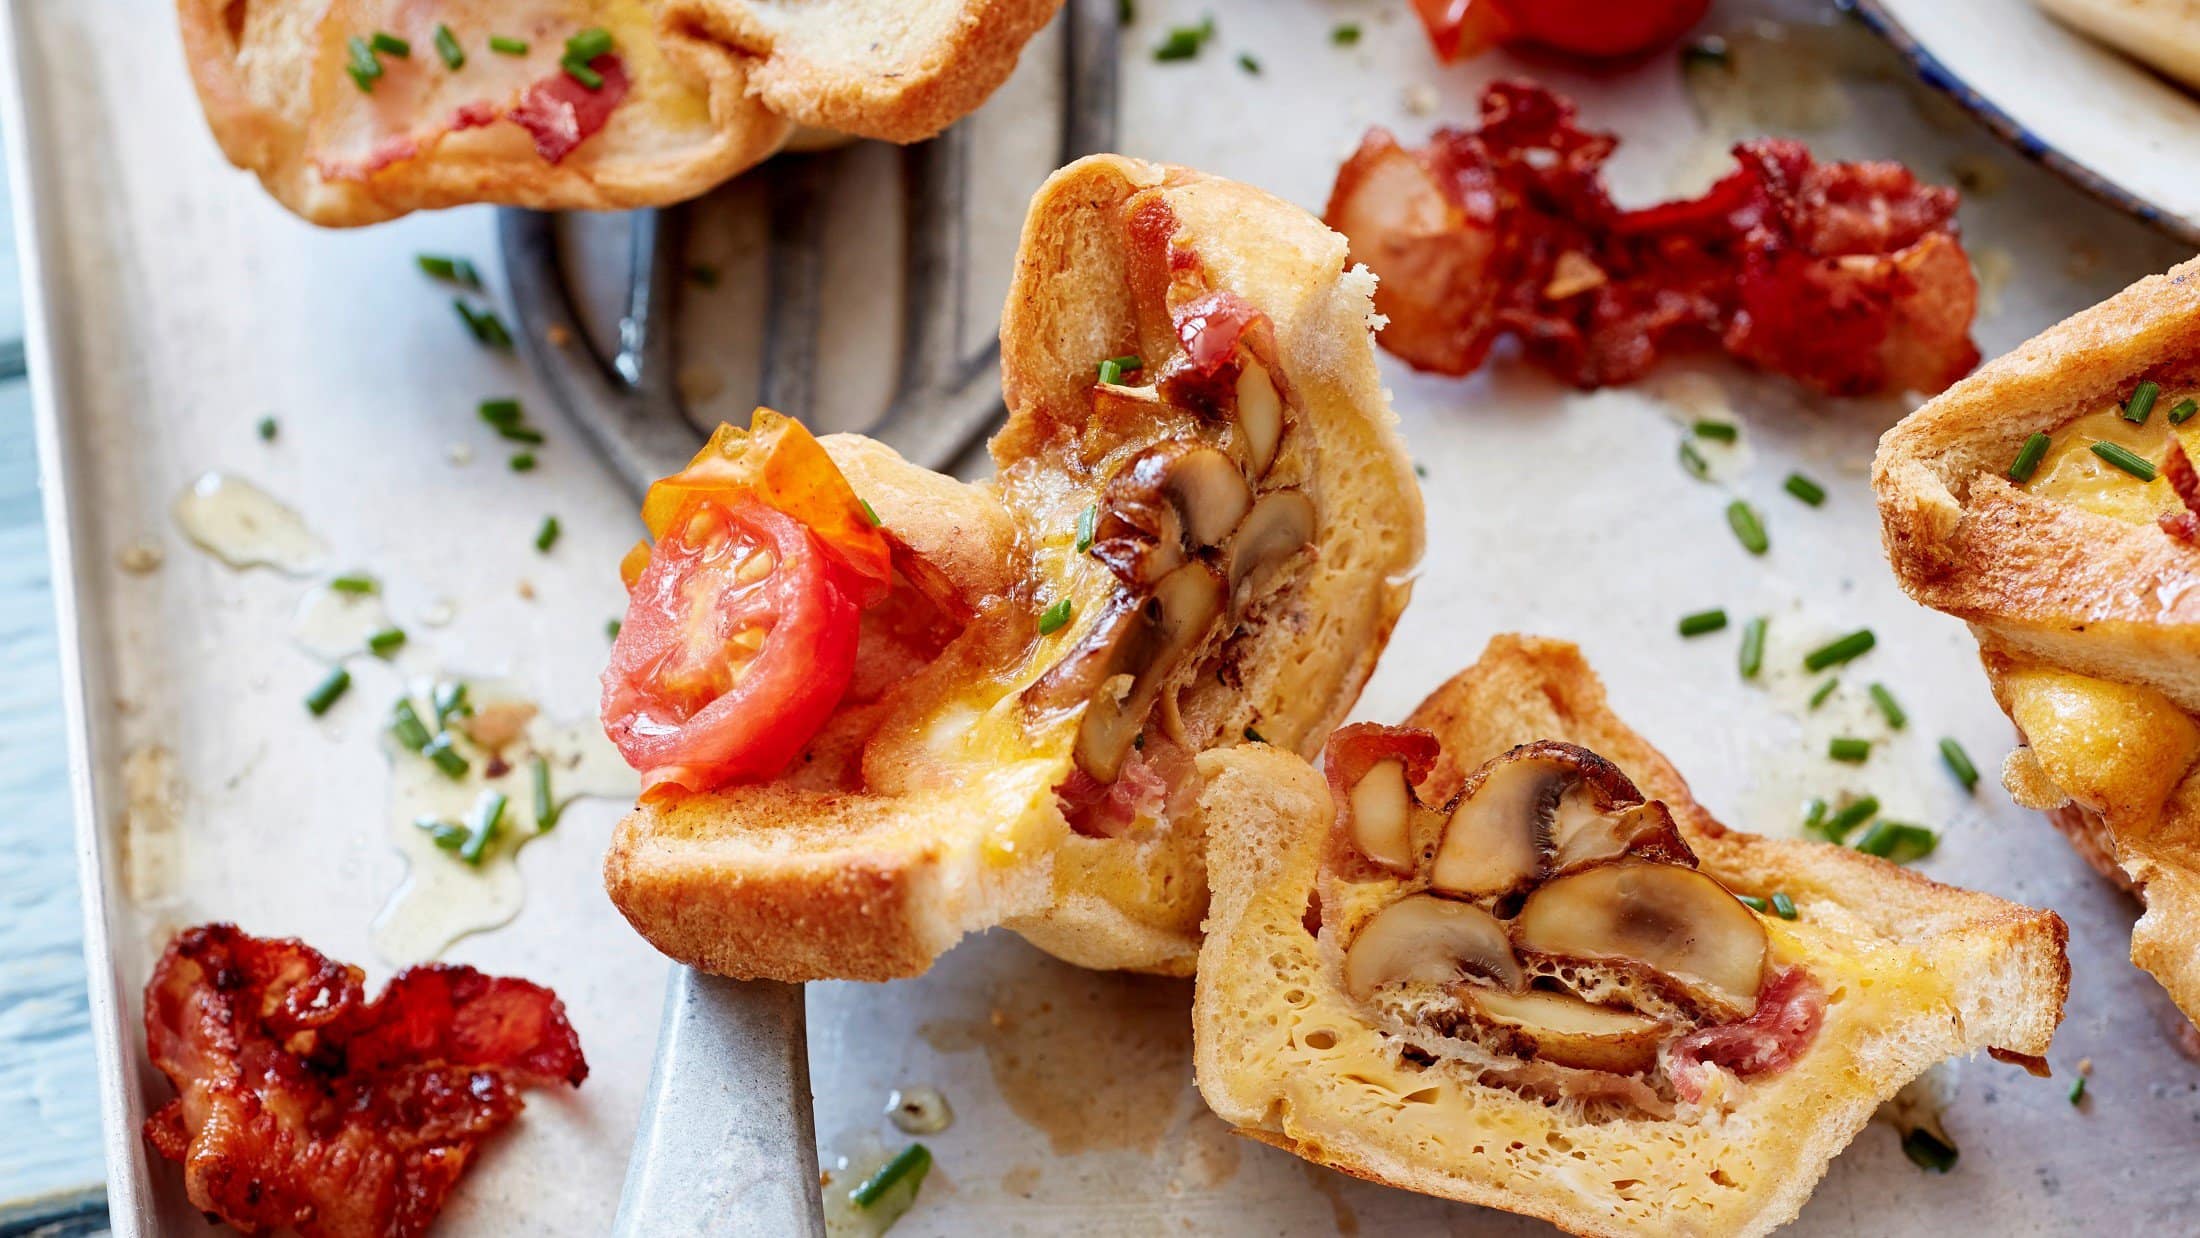 Auf einem Blech liegen aufgeschnittene Toast-Muffins gefüllt mit Tomaten und Champignons.